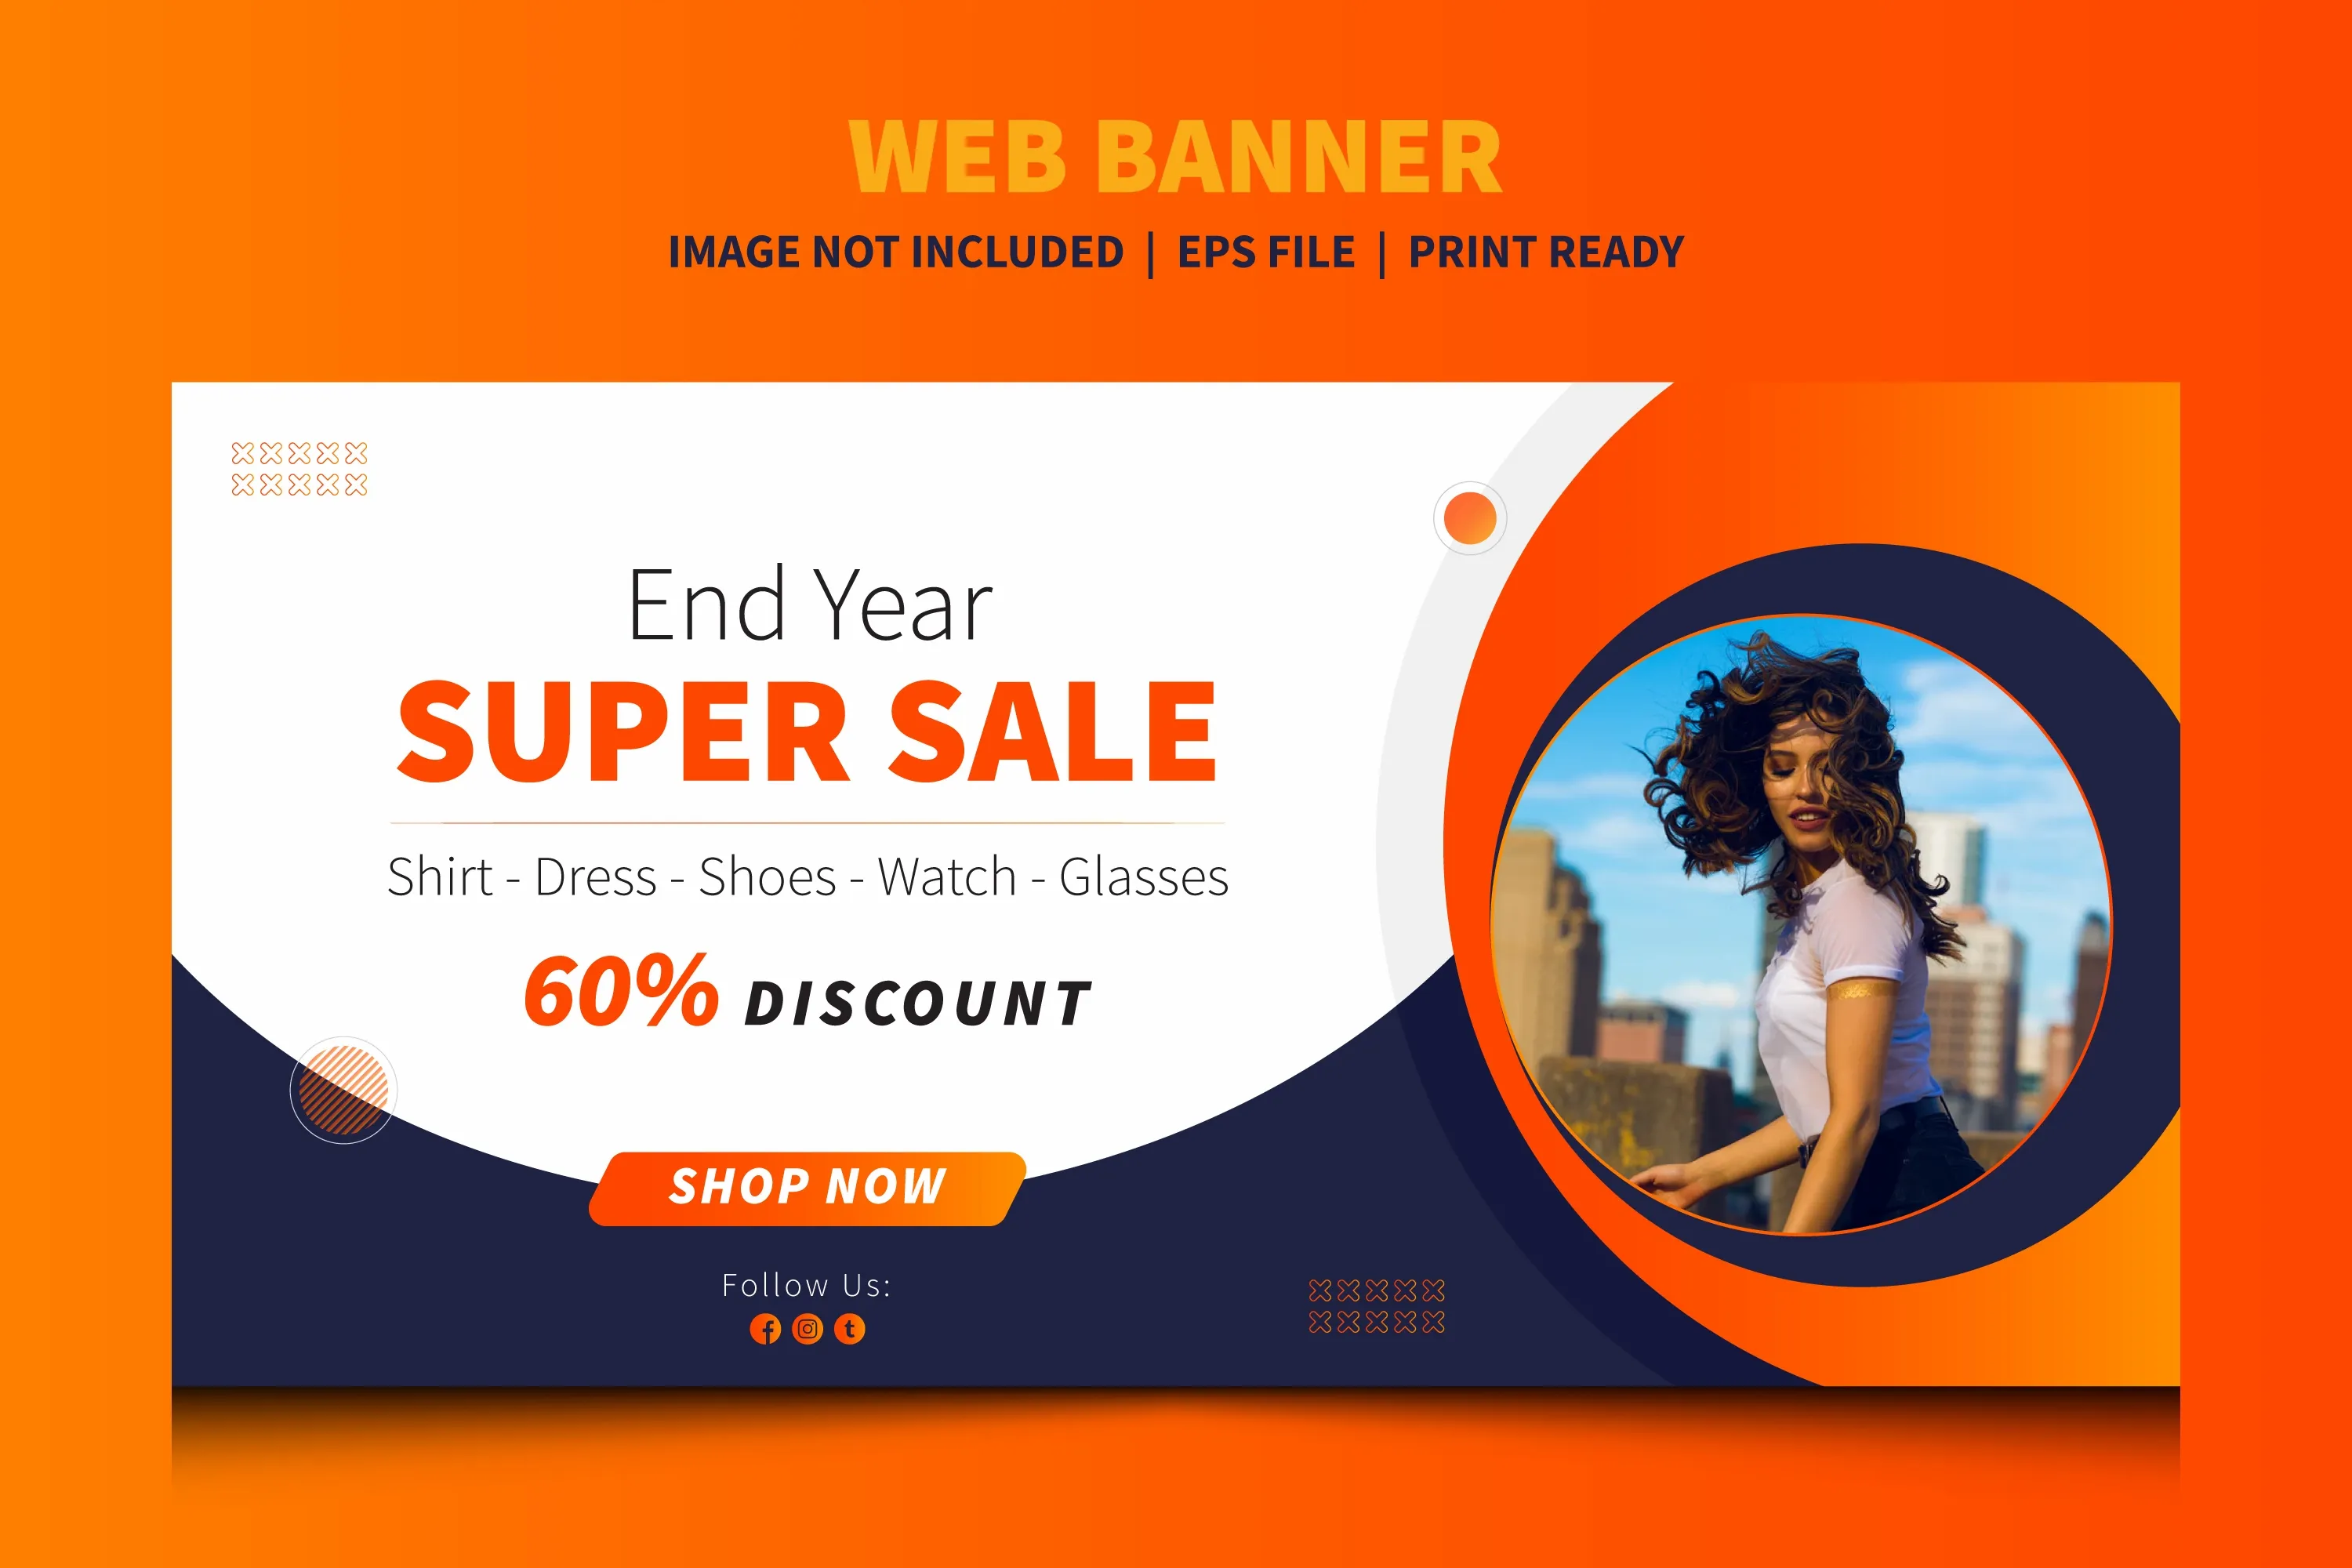 End year super sale web banner. offer banner